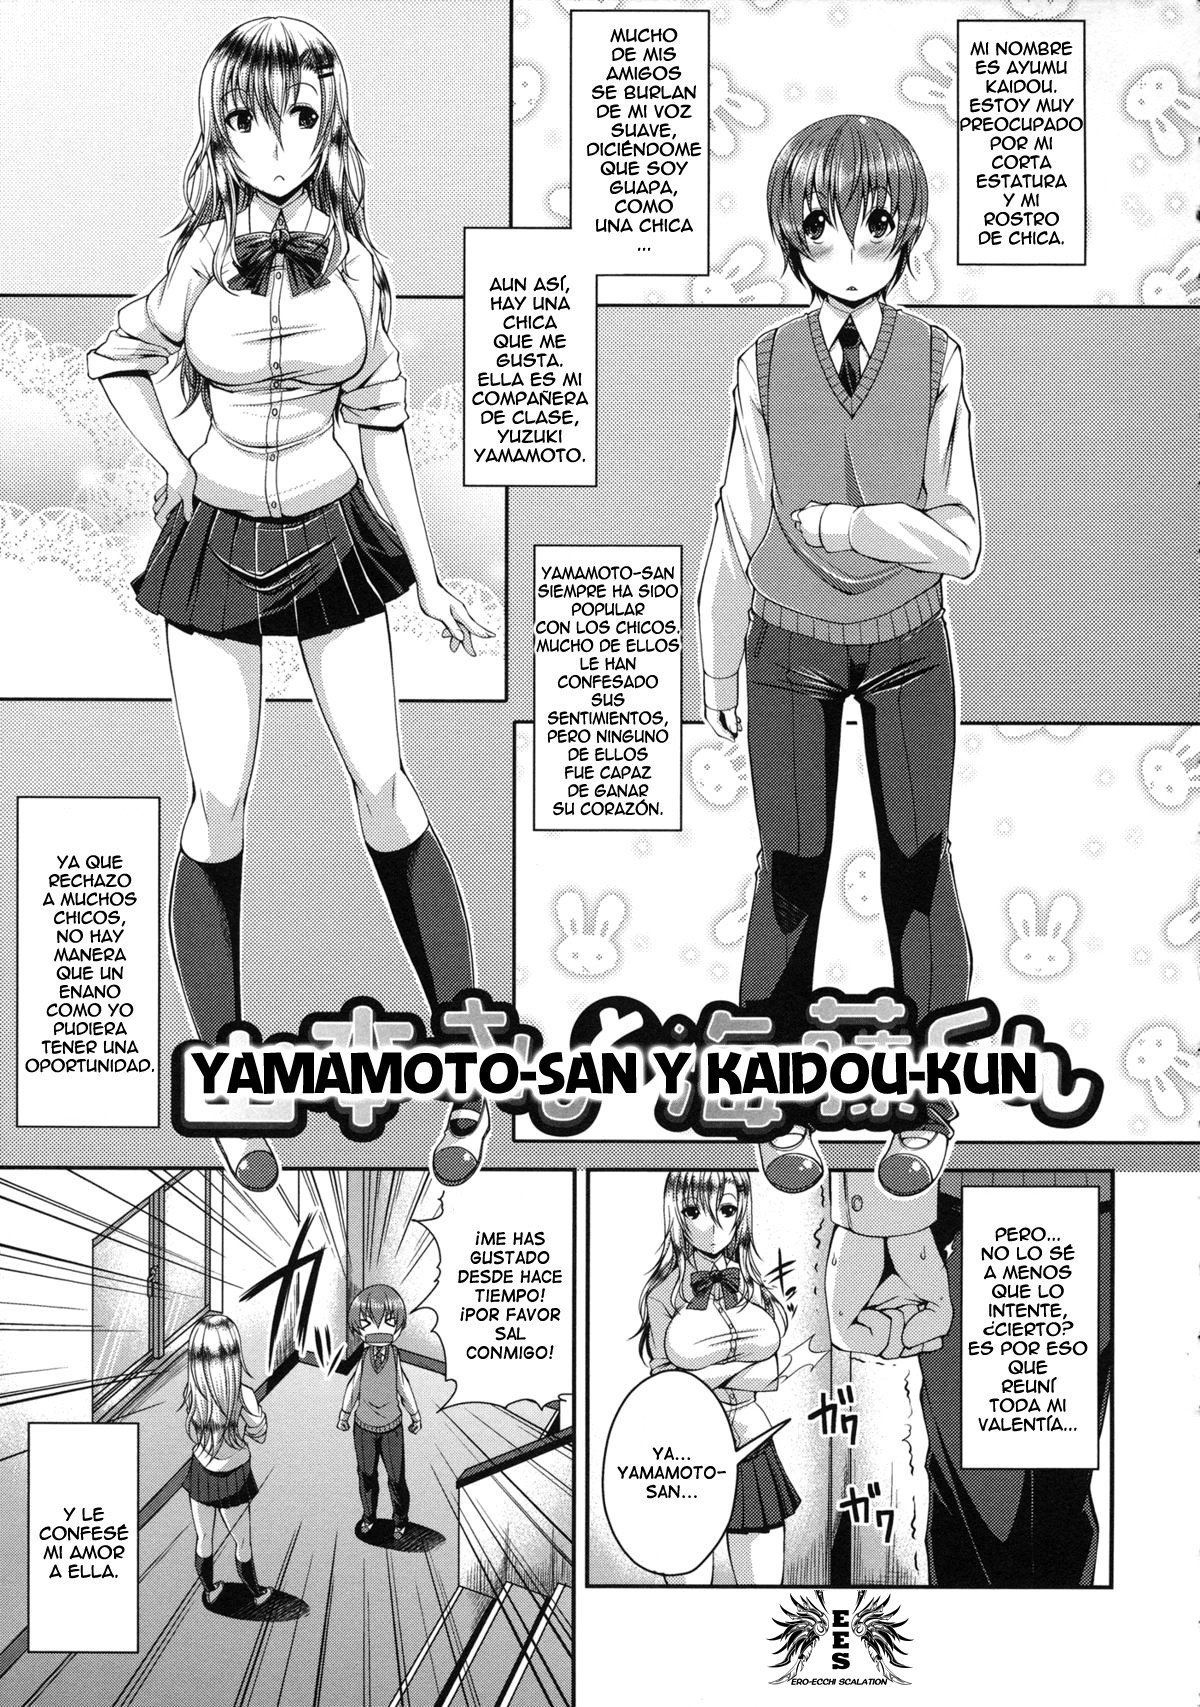 Yamamoto-san and Kaidou-kun - 0